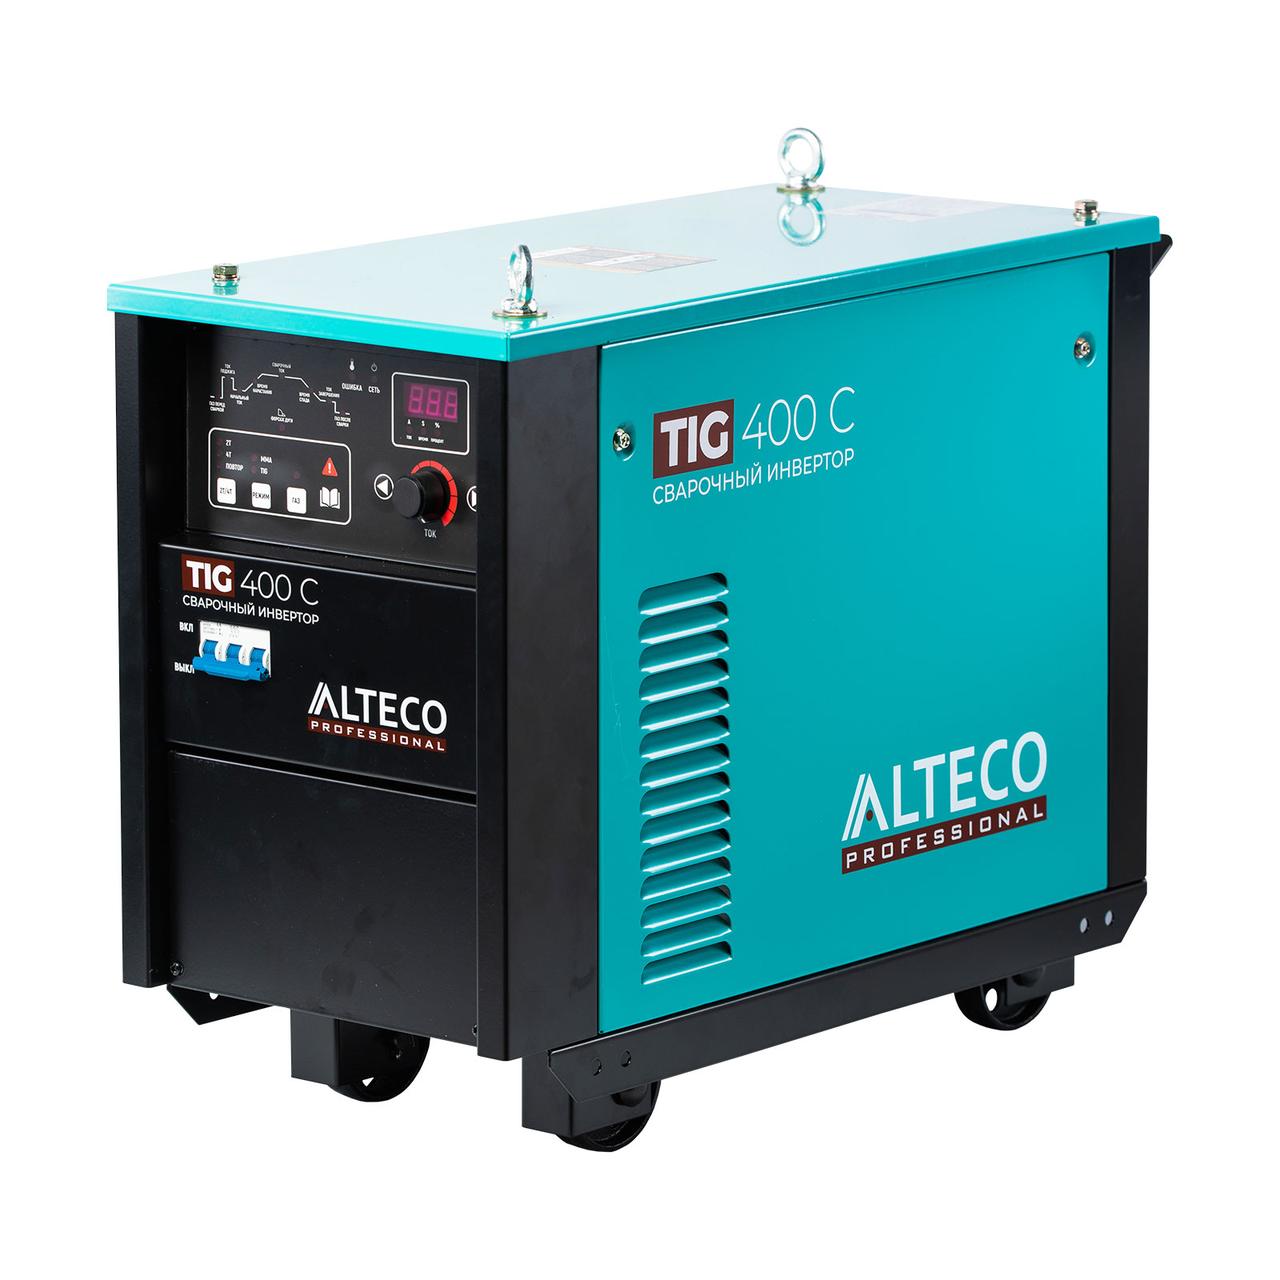 Сварочный аппарат ALTECO TIG 400 C (Аргонодуговая сварка)